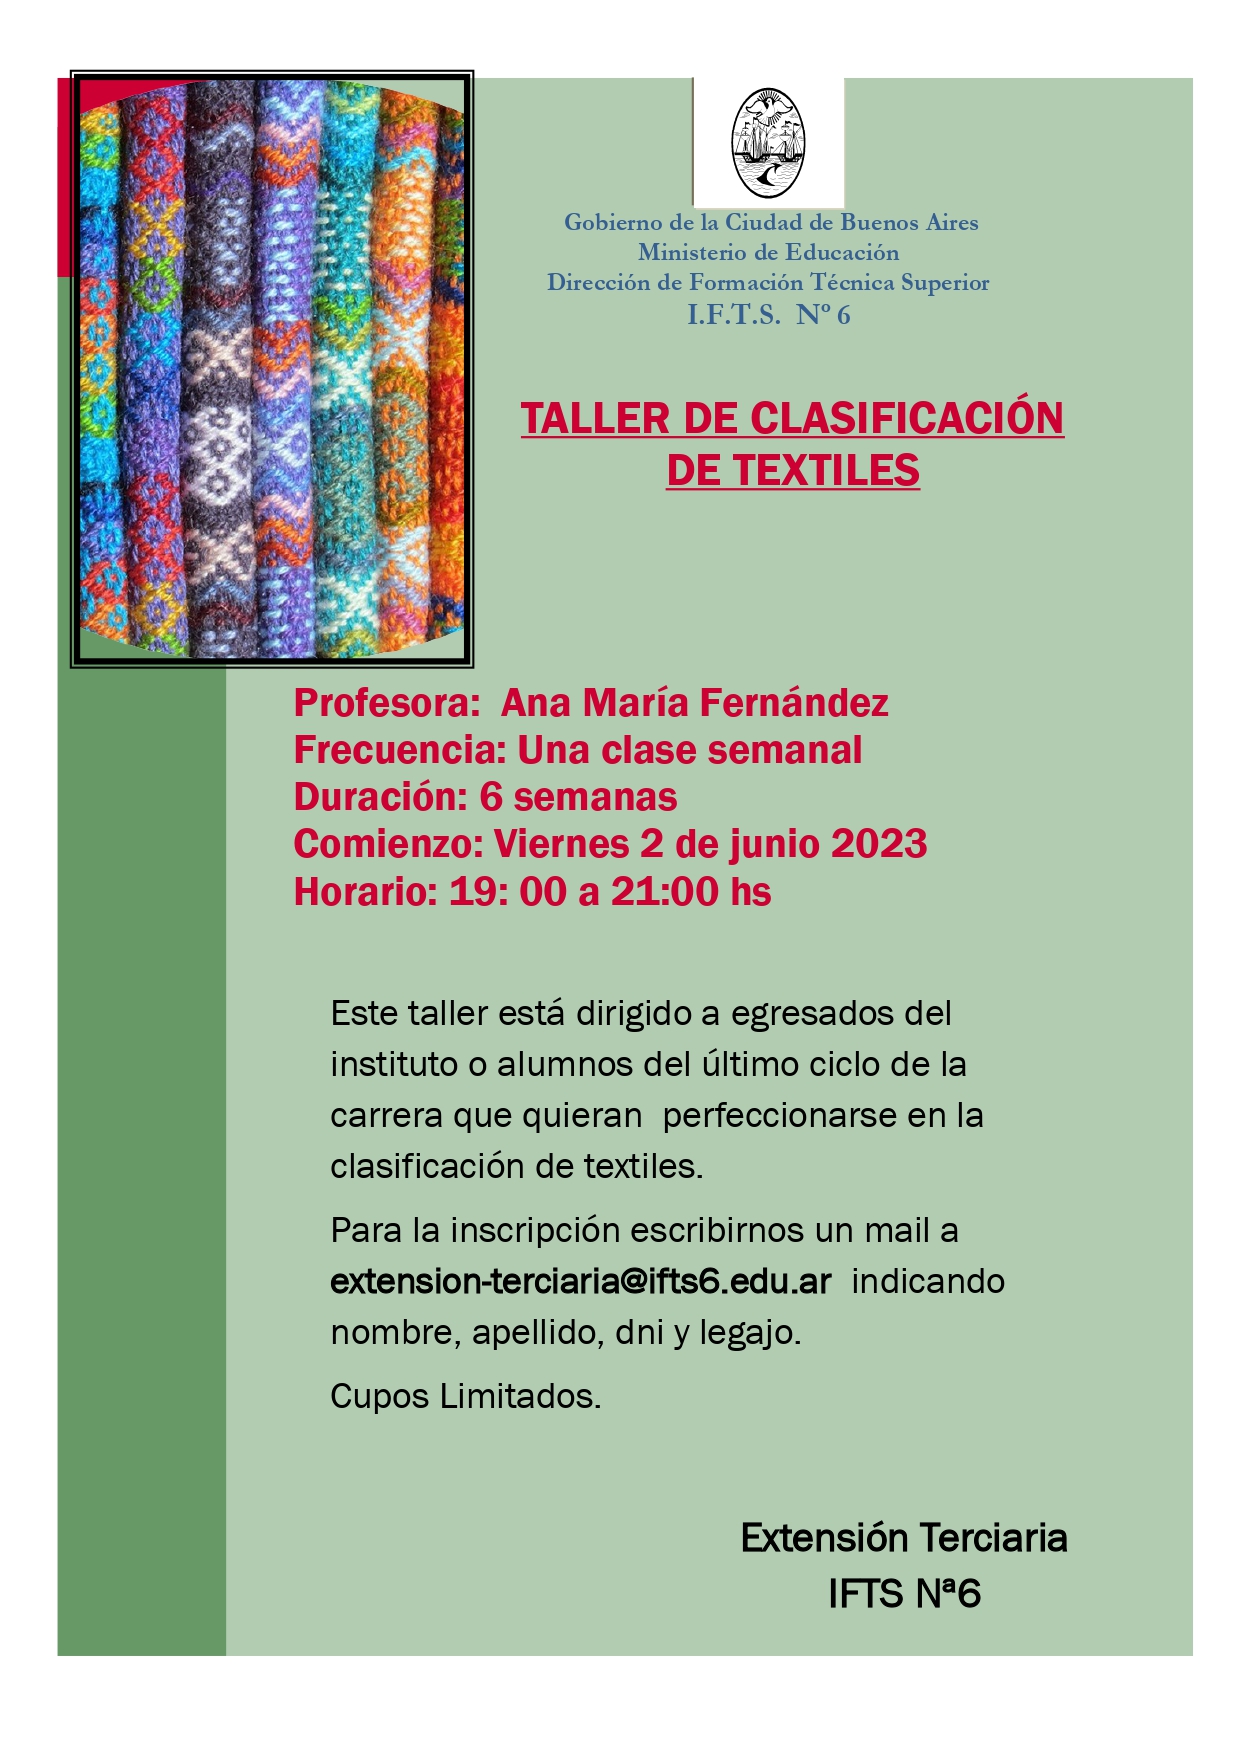 Convocatoria Taller Clasificación de textiles 1er Cuat 2023